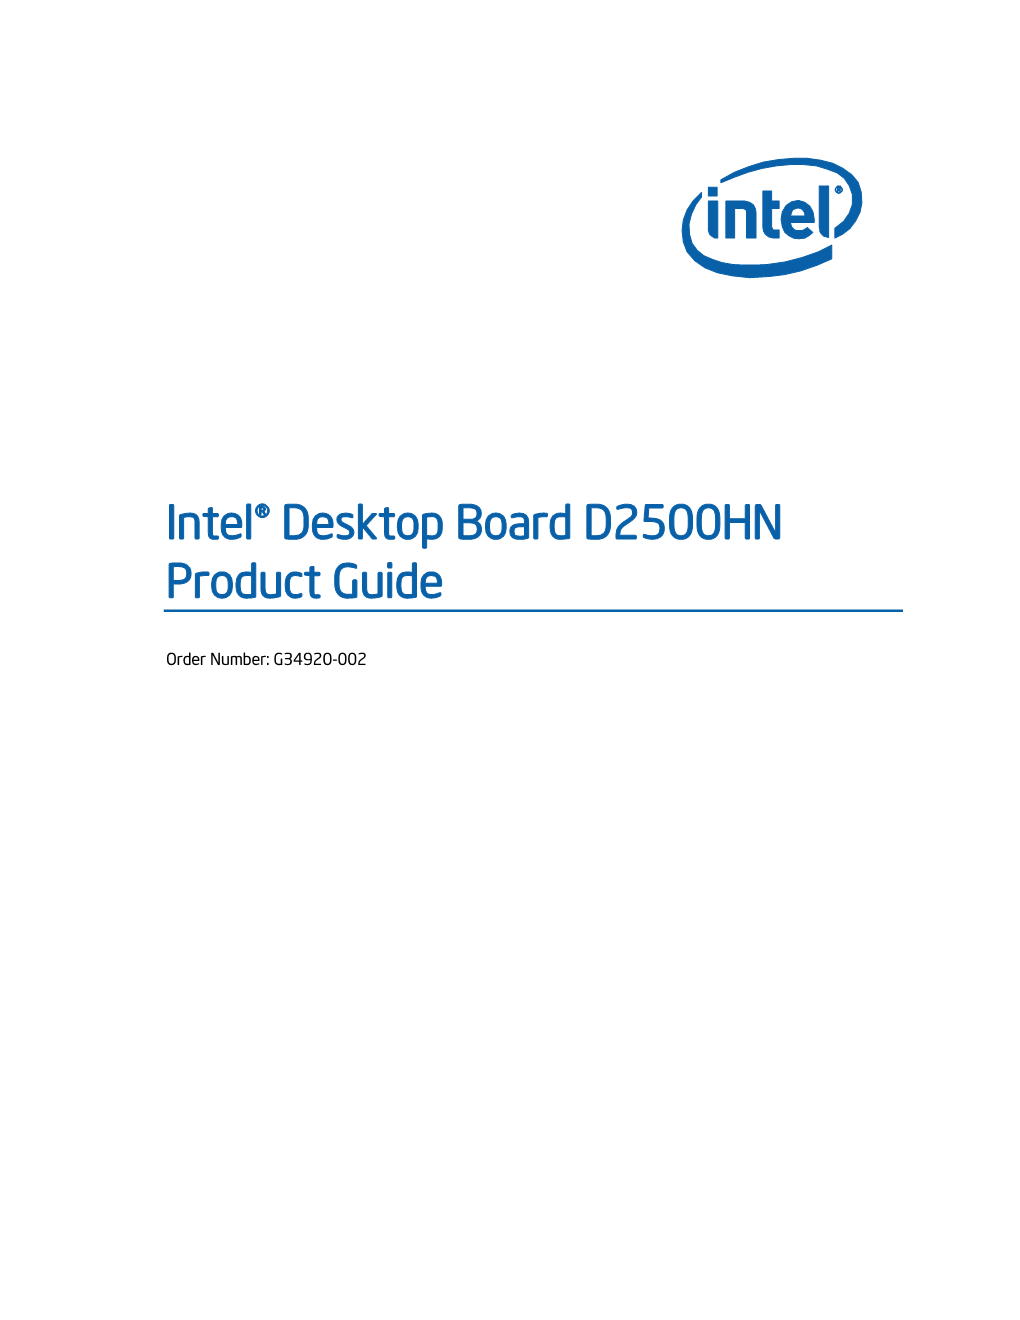 Intel® Desktop Board D2500HN Product Guide